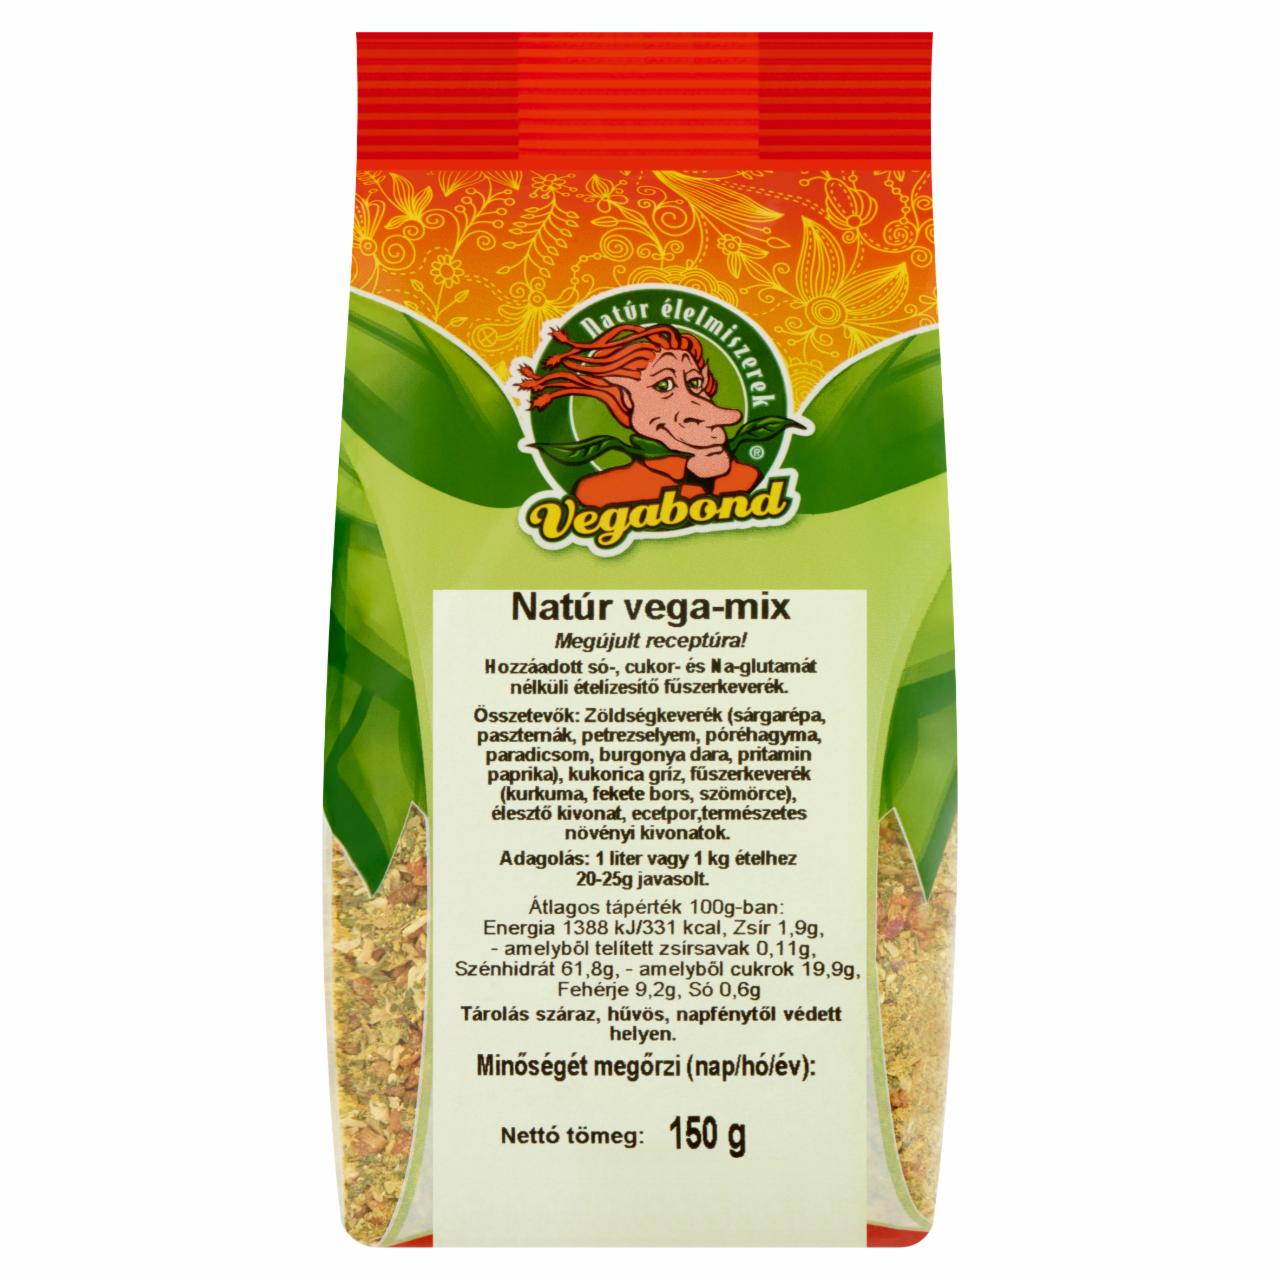 Képek - Vegabond natúr vega-mix ételízesítő fűszerkeverék 150 g